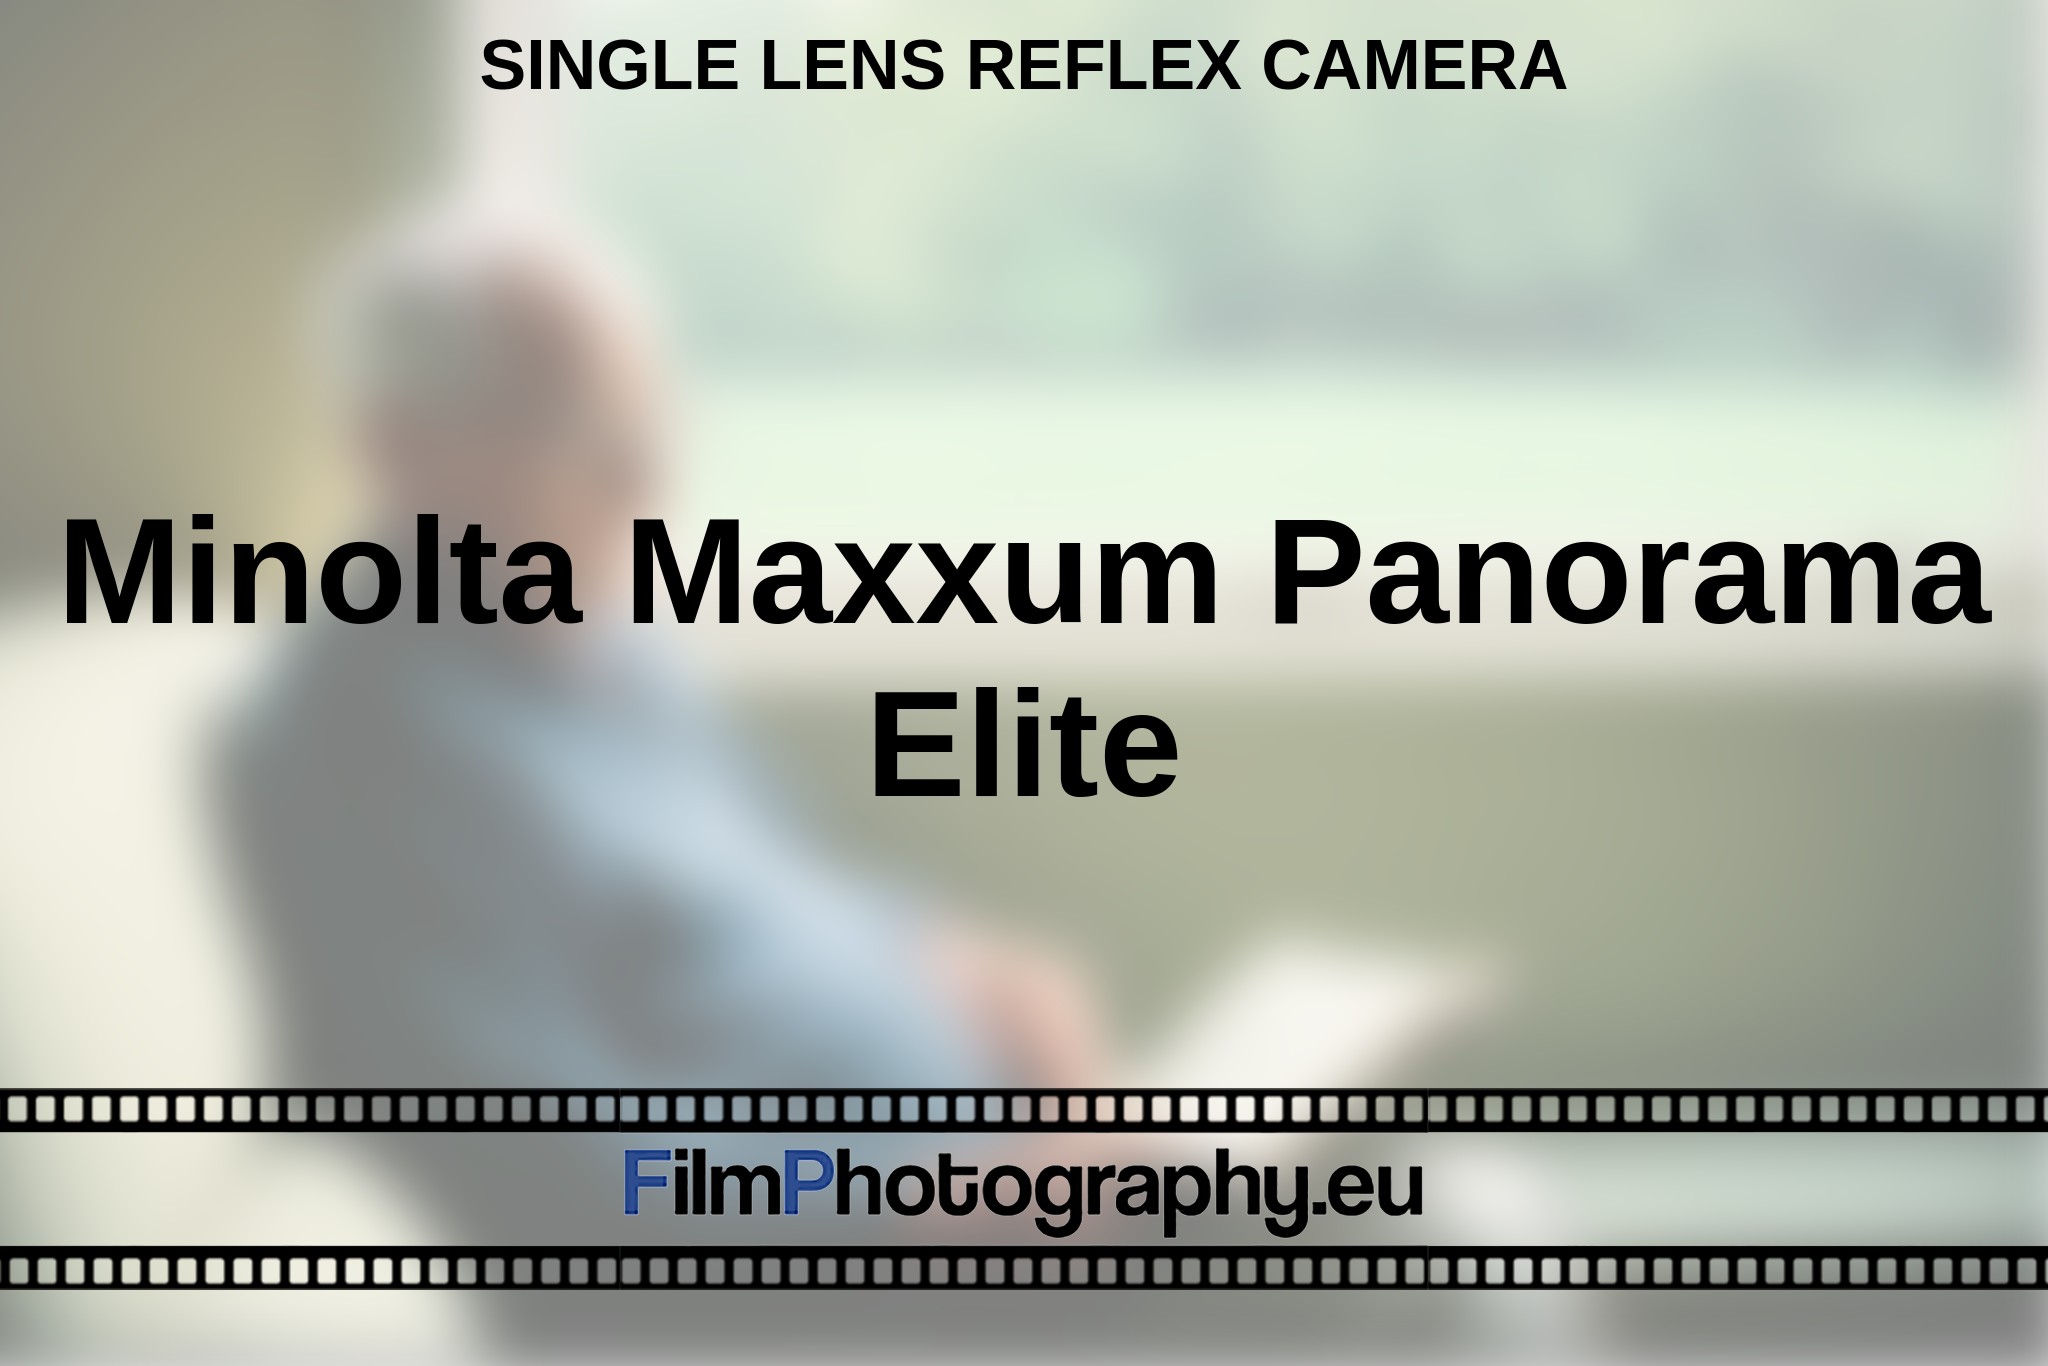 minolta-maxxum-panorama-elite-single-lens-reflex-camera-en-bnv.jpg